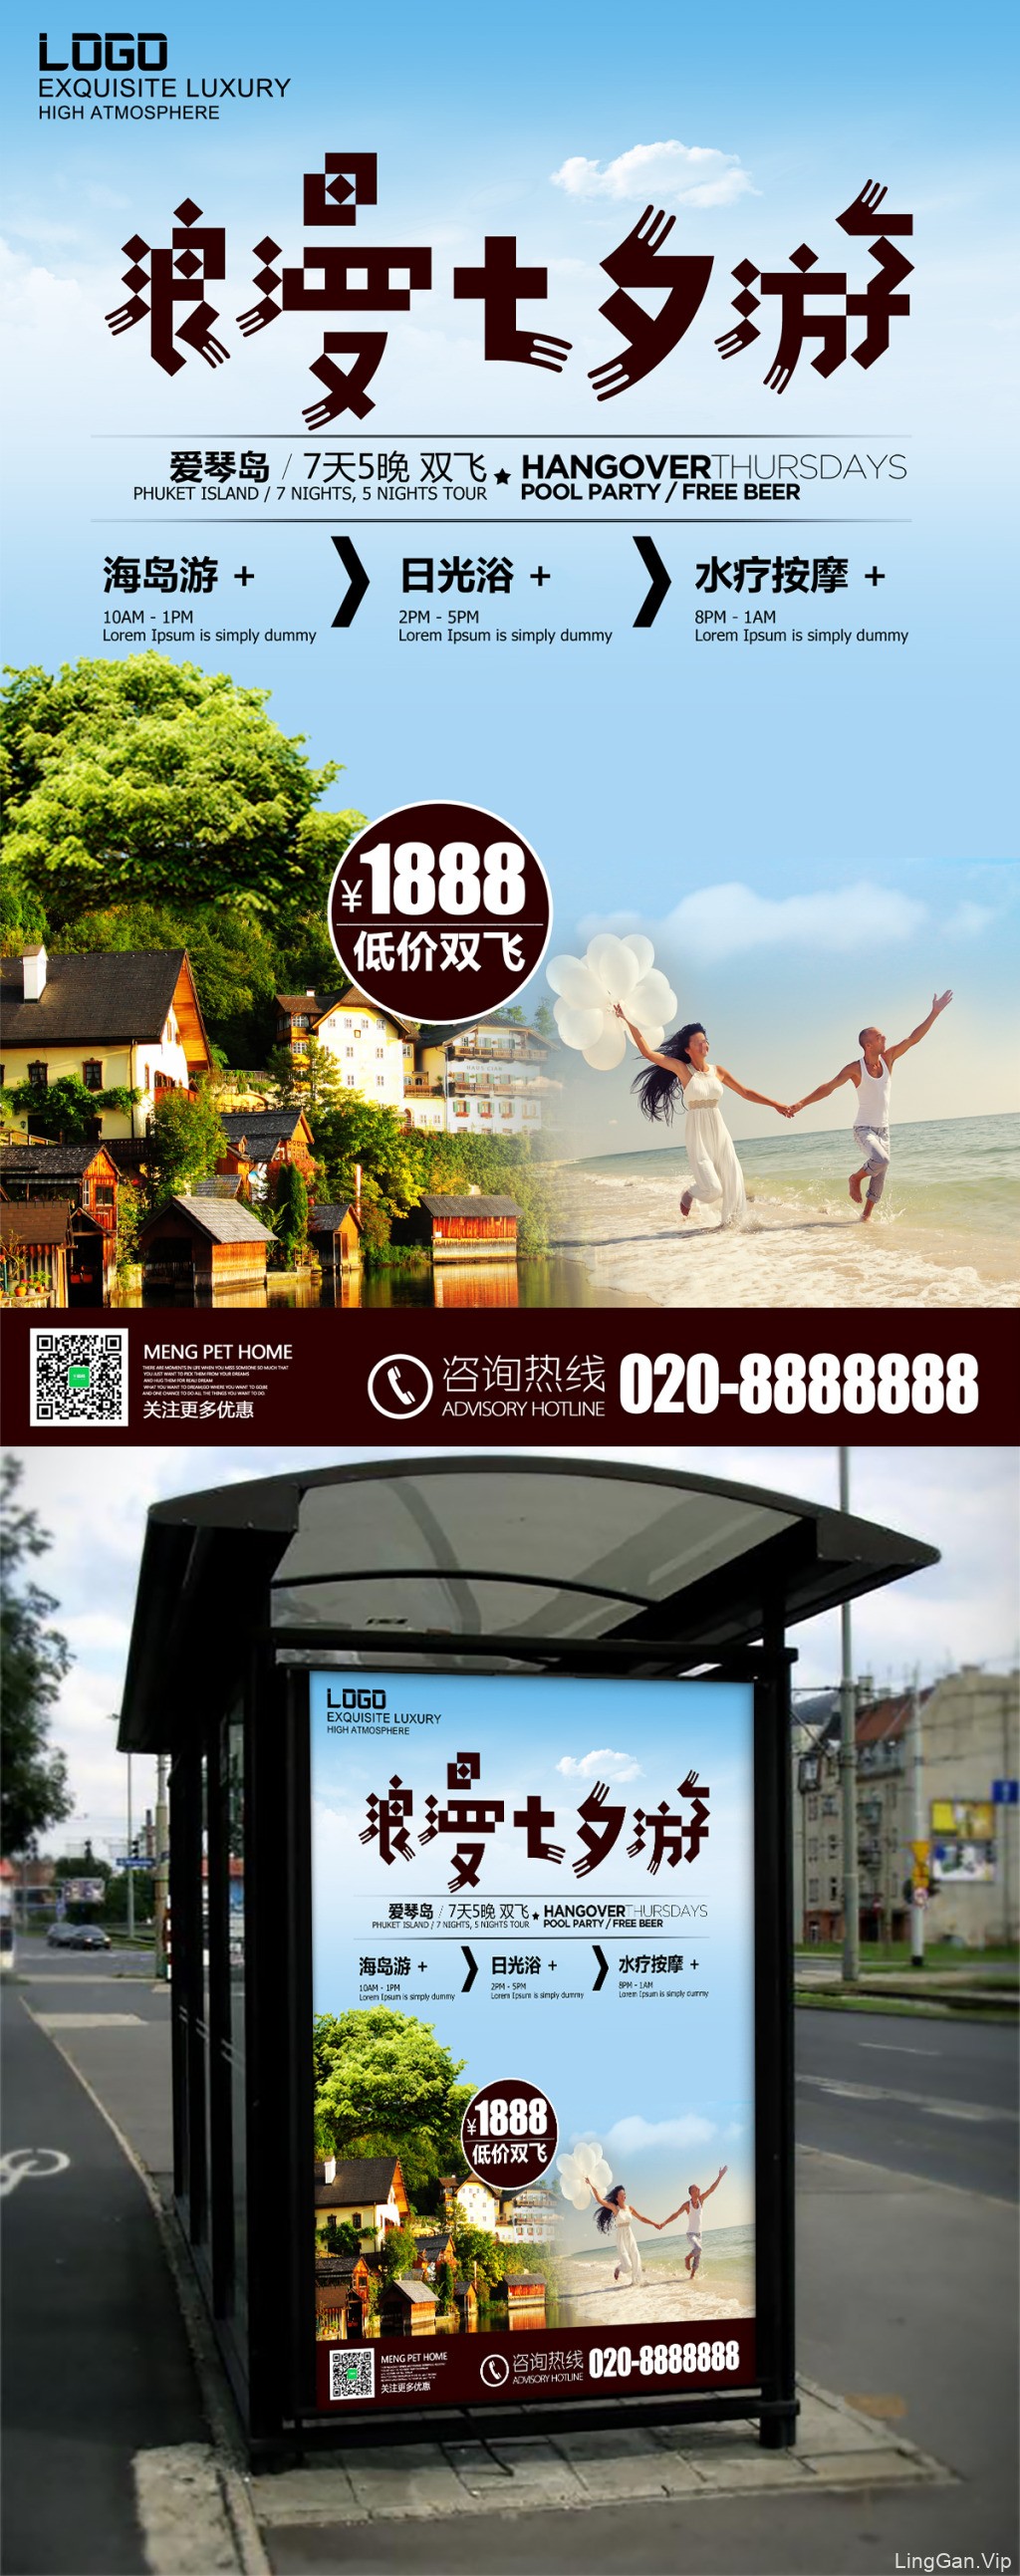 2017年七夕节旅行社促销活动海报设计-浪漫七夕游